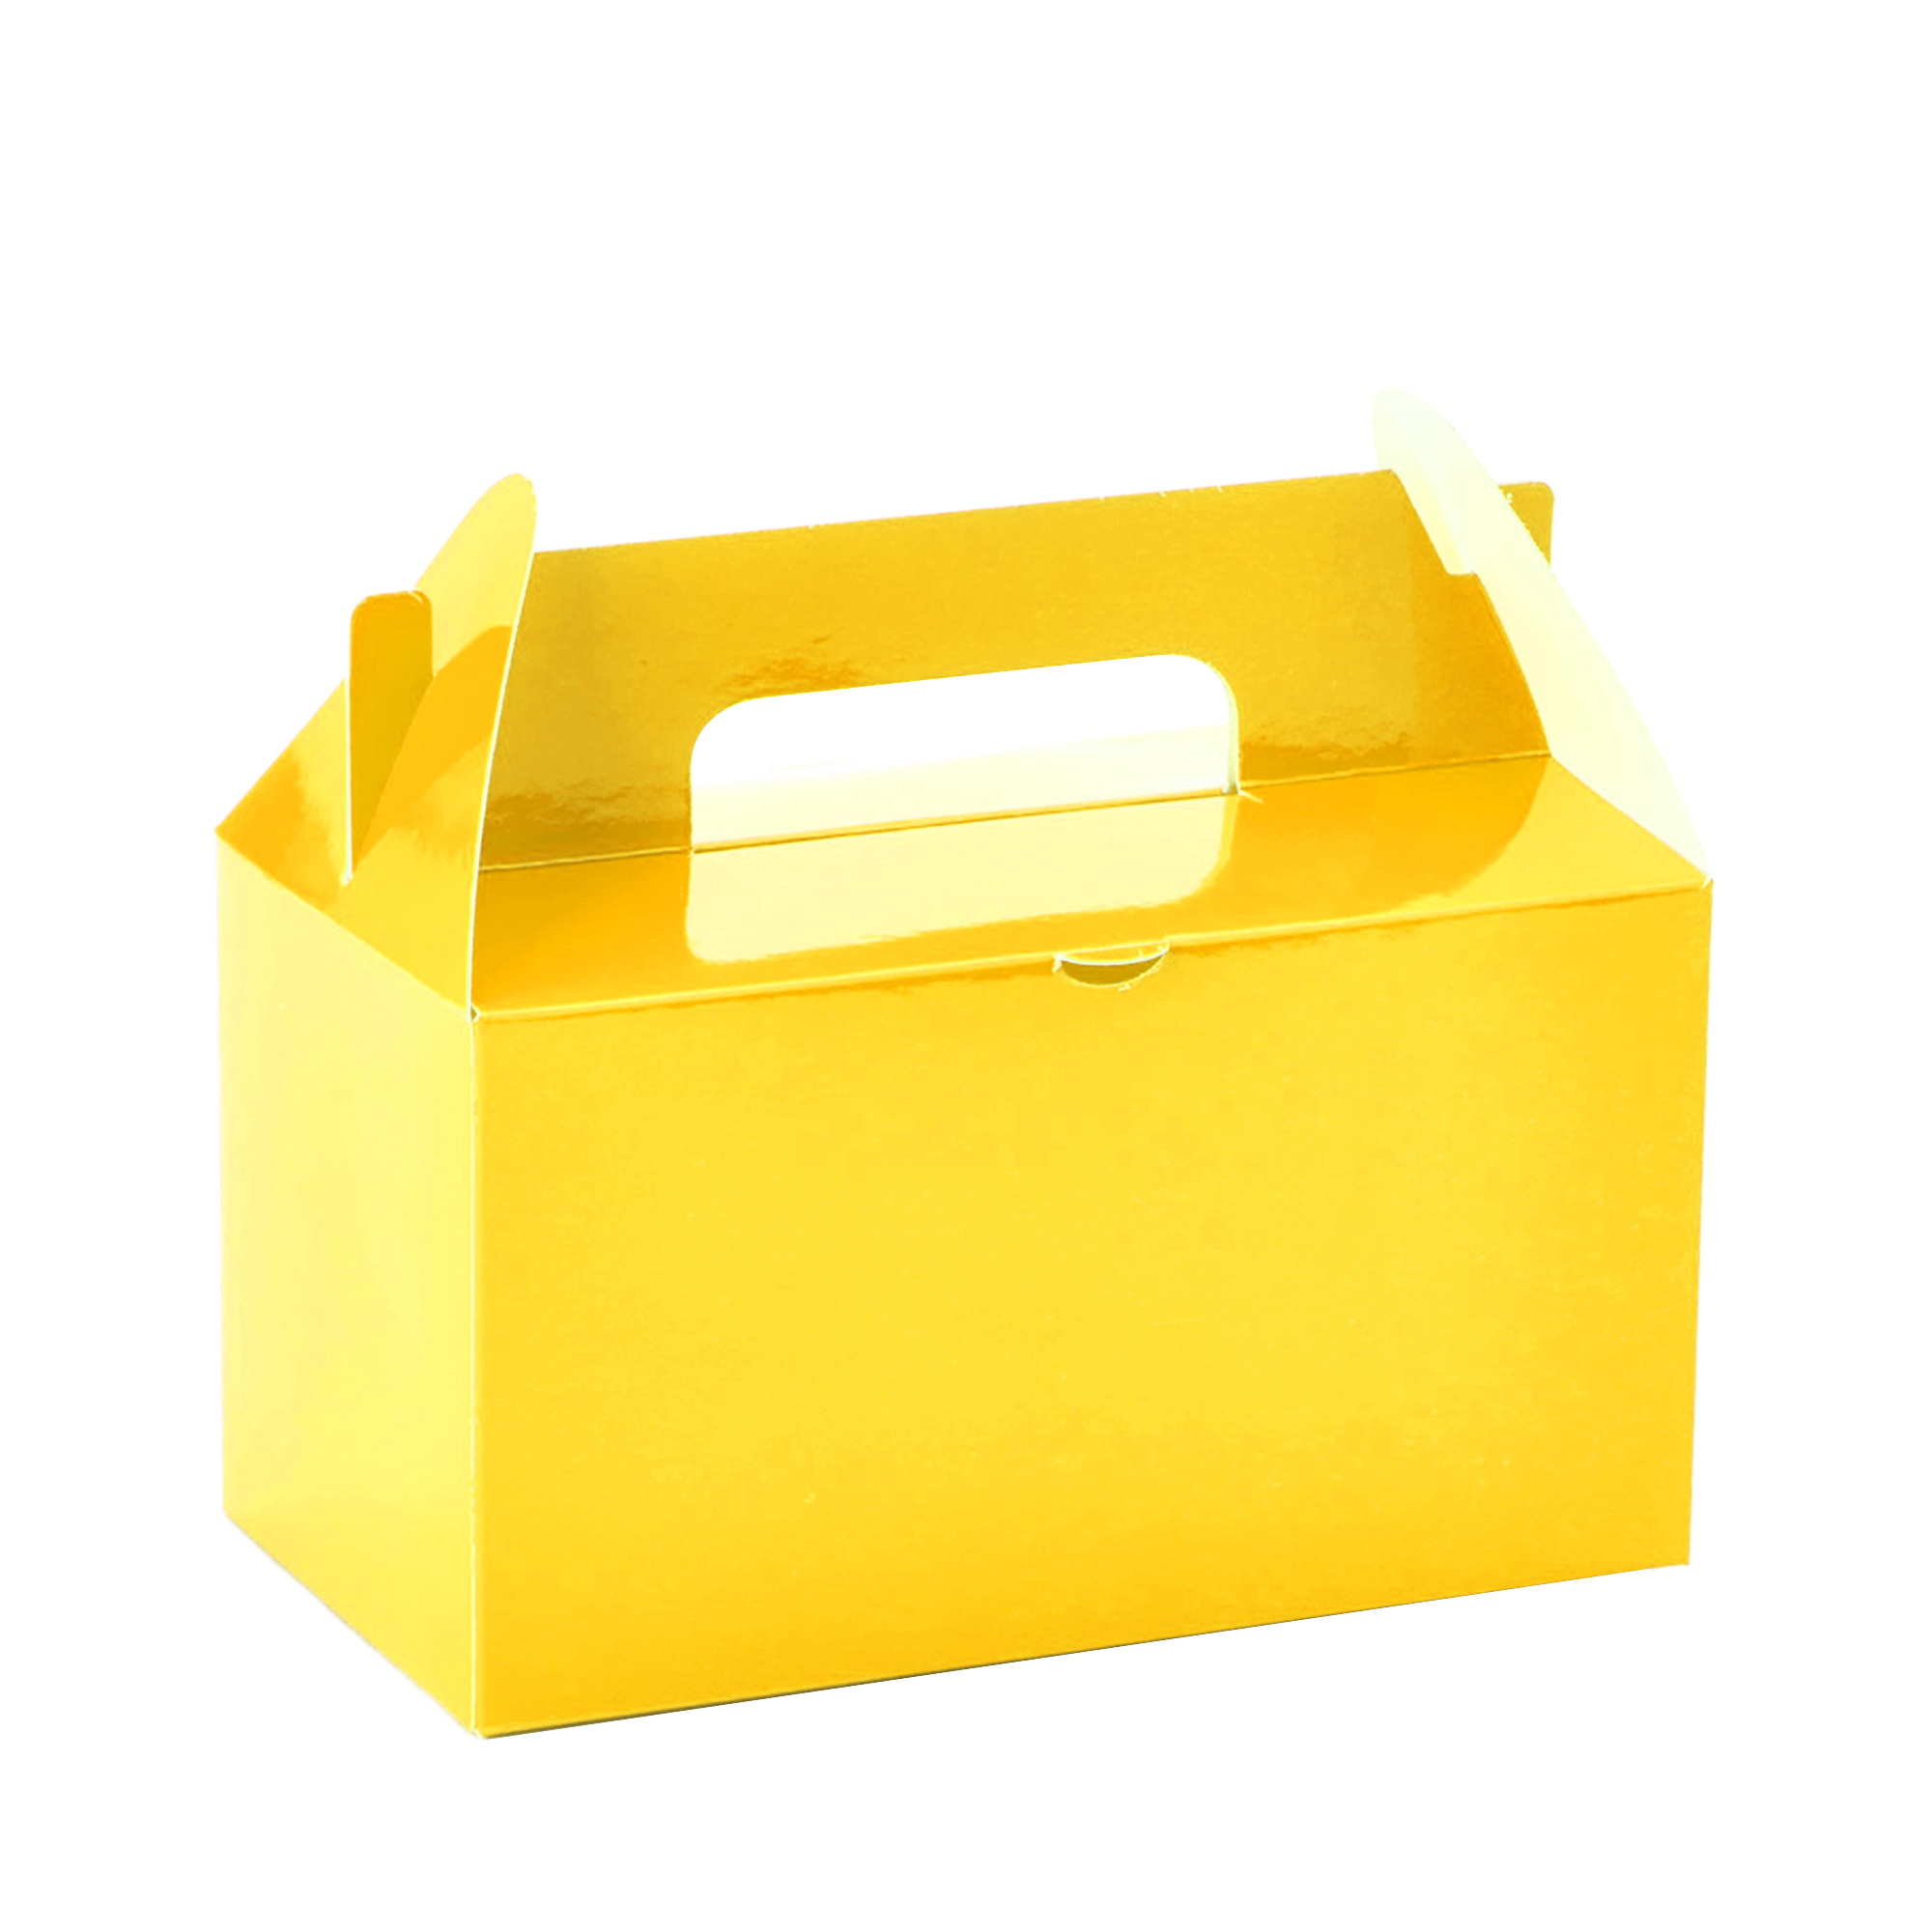 Takeout Box 12pcs/bag - Yellow